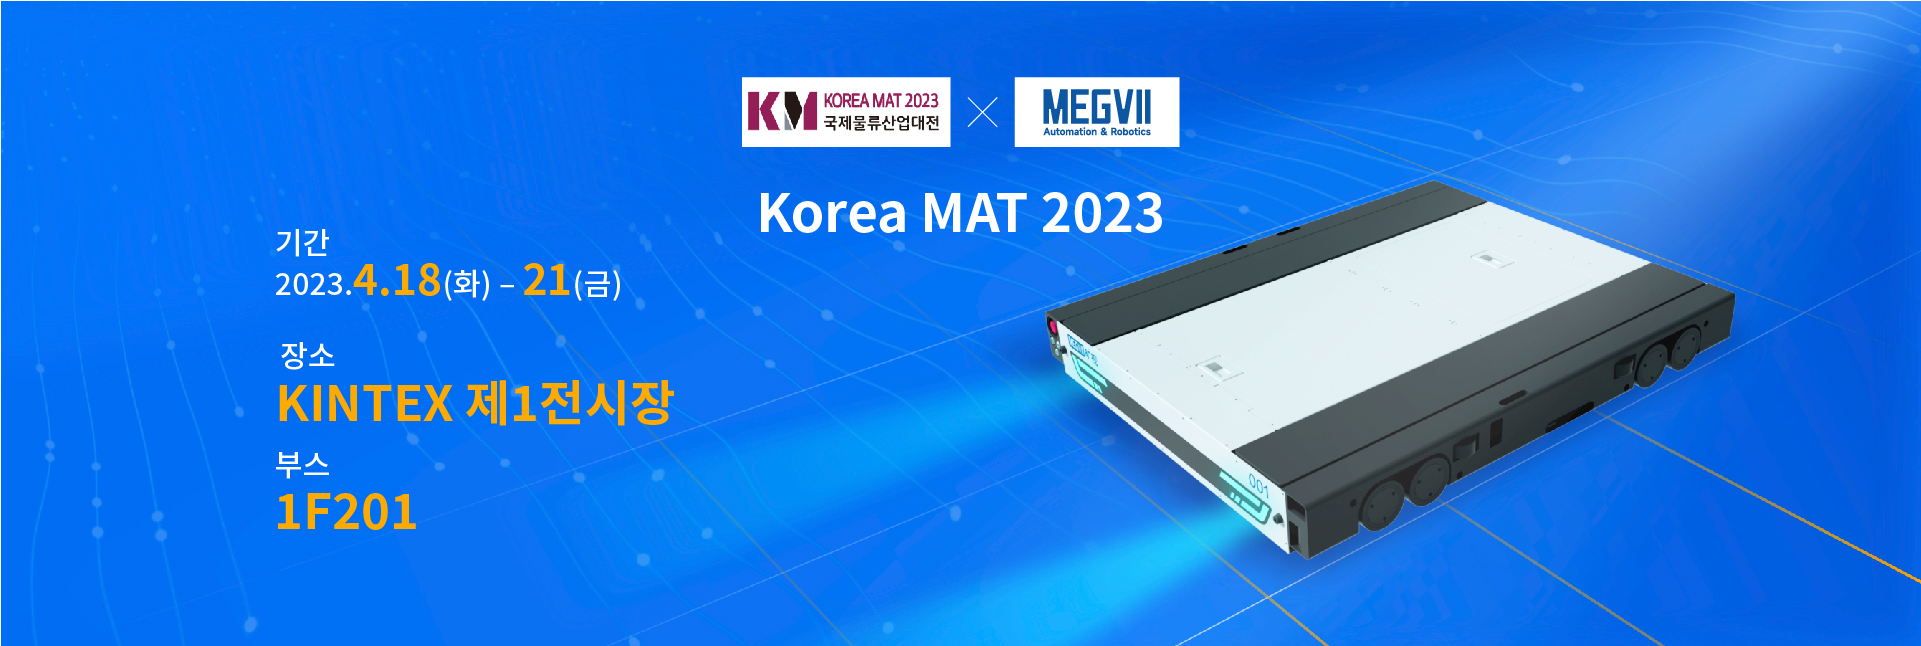 KOREA MAT 2023 킨텍스 박람회